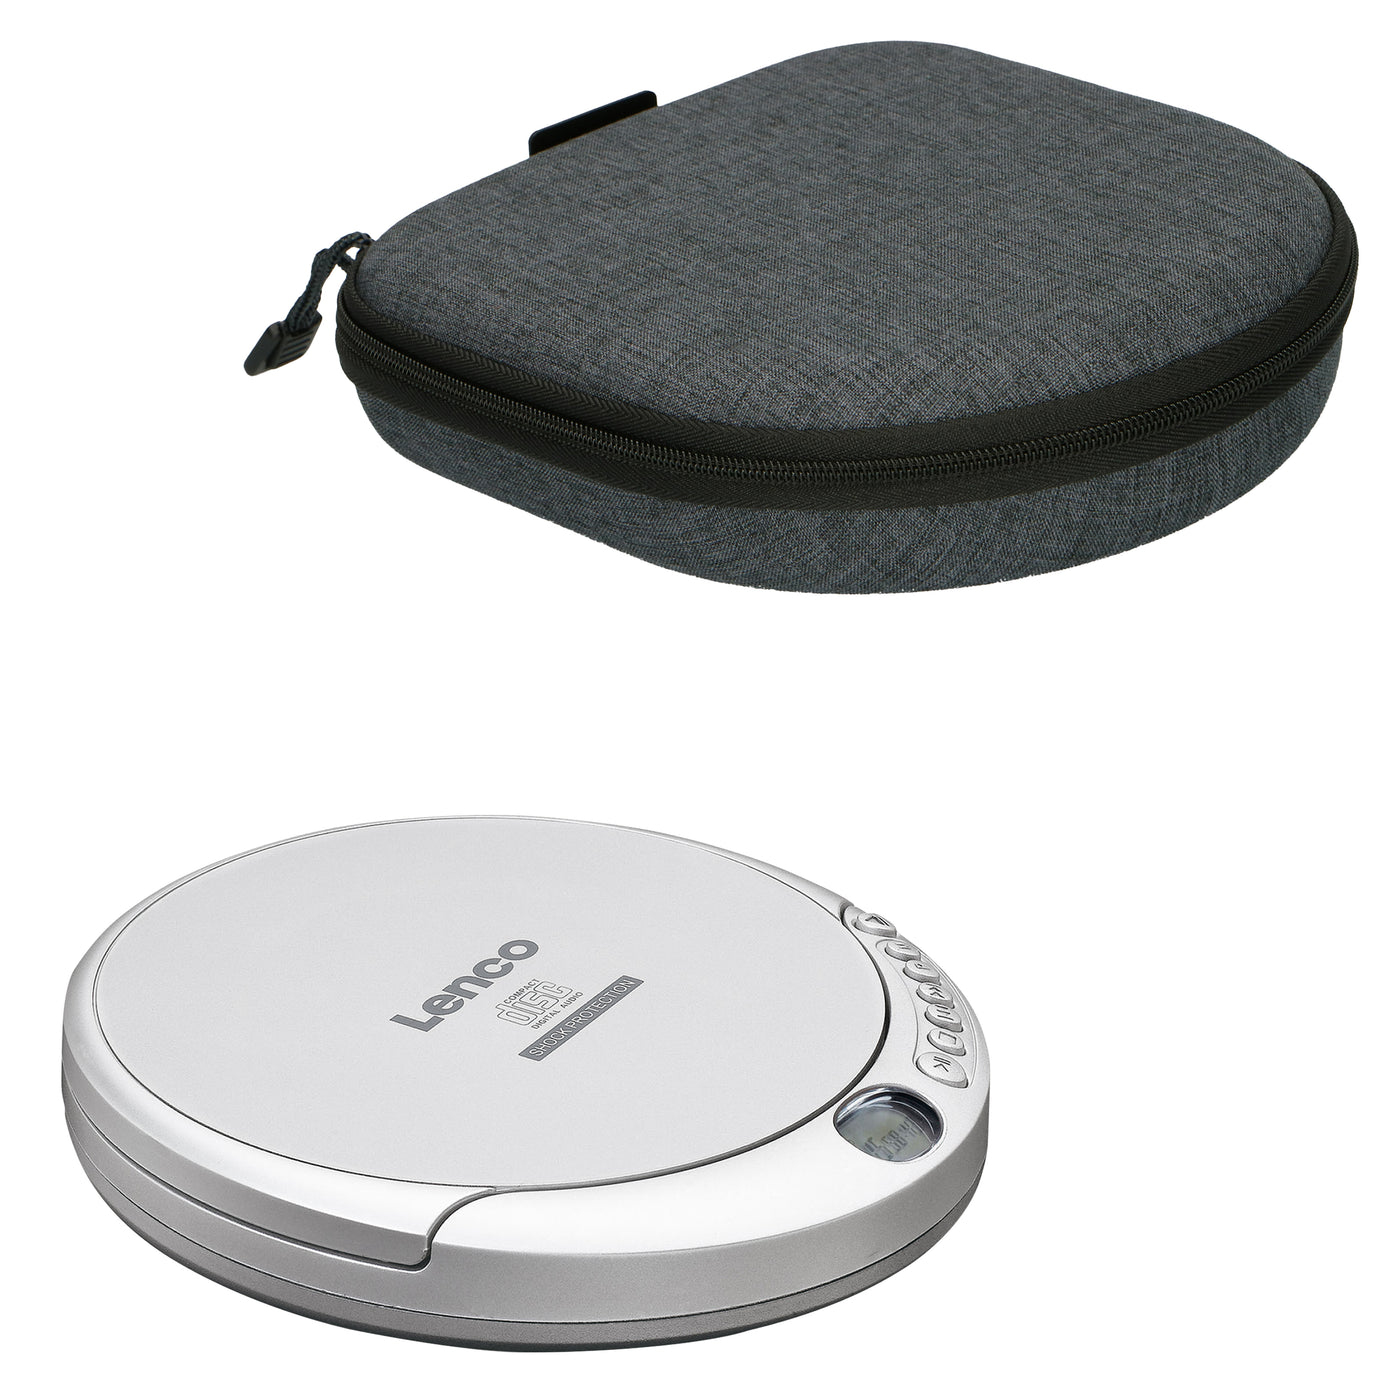 Lenco CD-201SI+PBC-50GY - Lecteur CD/MP3 portable avec protection anti-choc et étui de rangement pratique avec powerbank intégrée - Argent/Gris